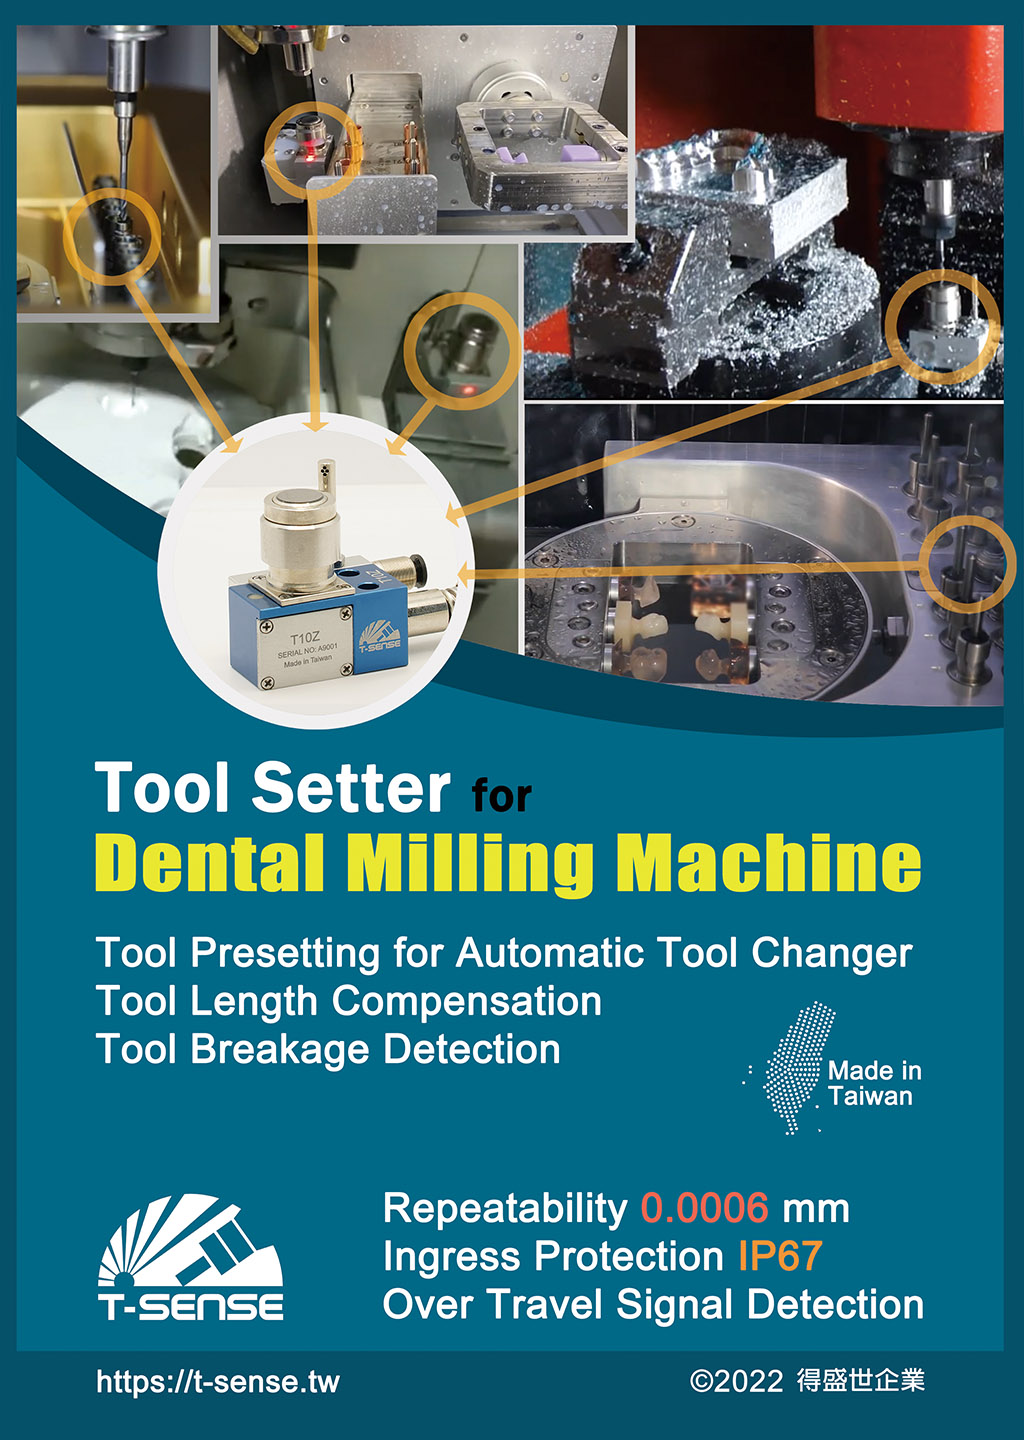 toolsetter for dental milling machine